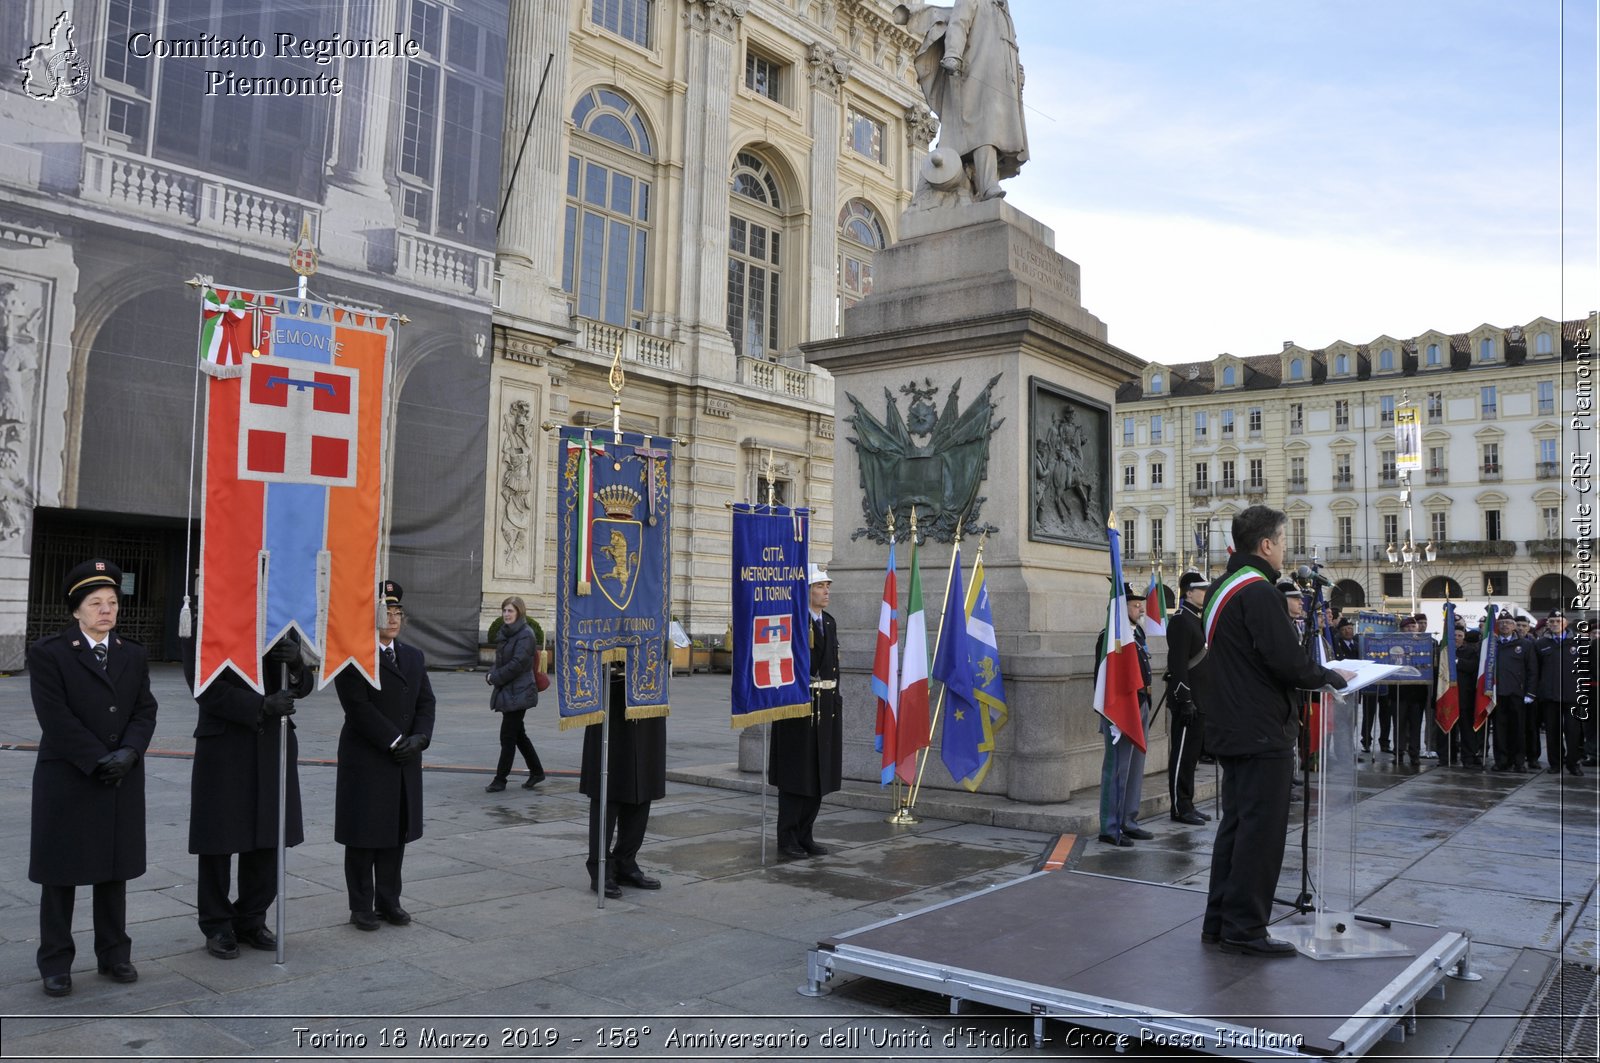 Torino 18 Marzo 2019 - 158 Anniversario dell'Unit d'Italia - Croce Rossa Italiana - Comitato Regionale del Piemonte